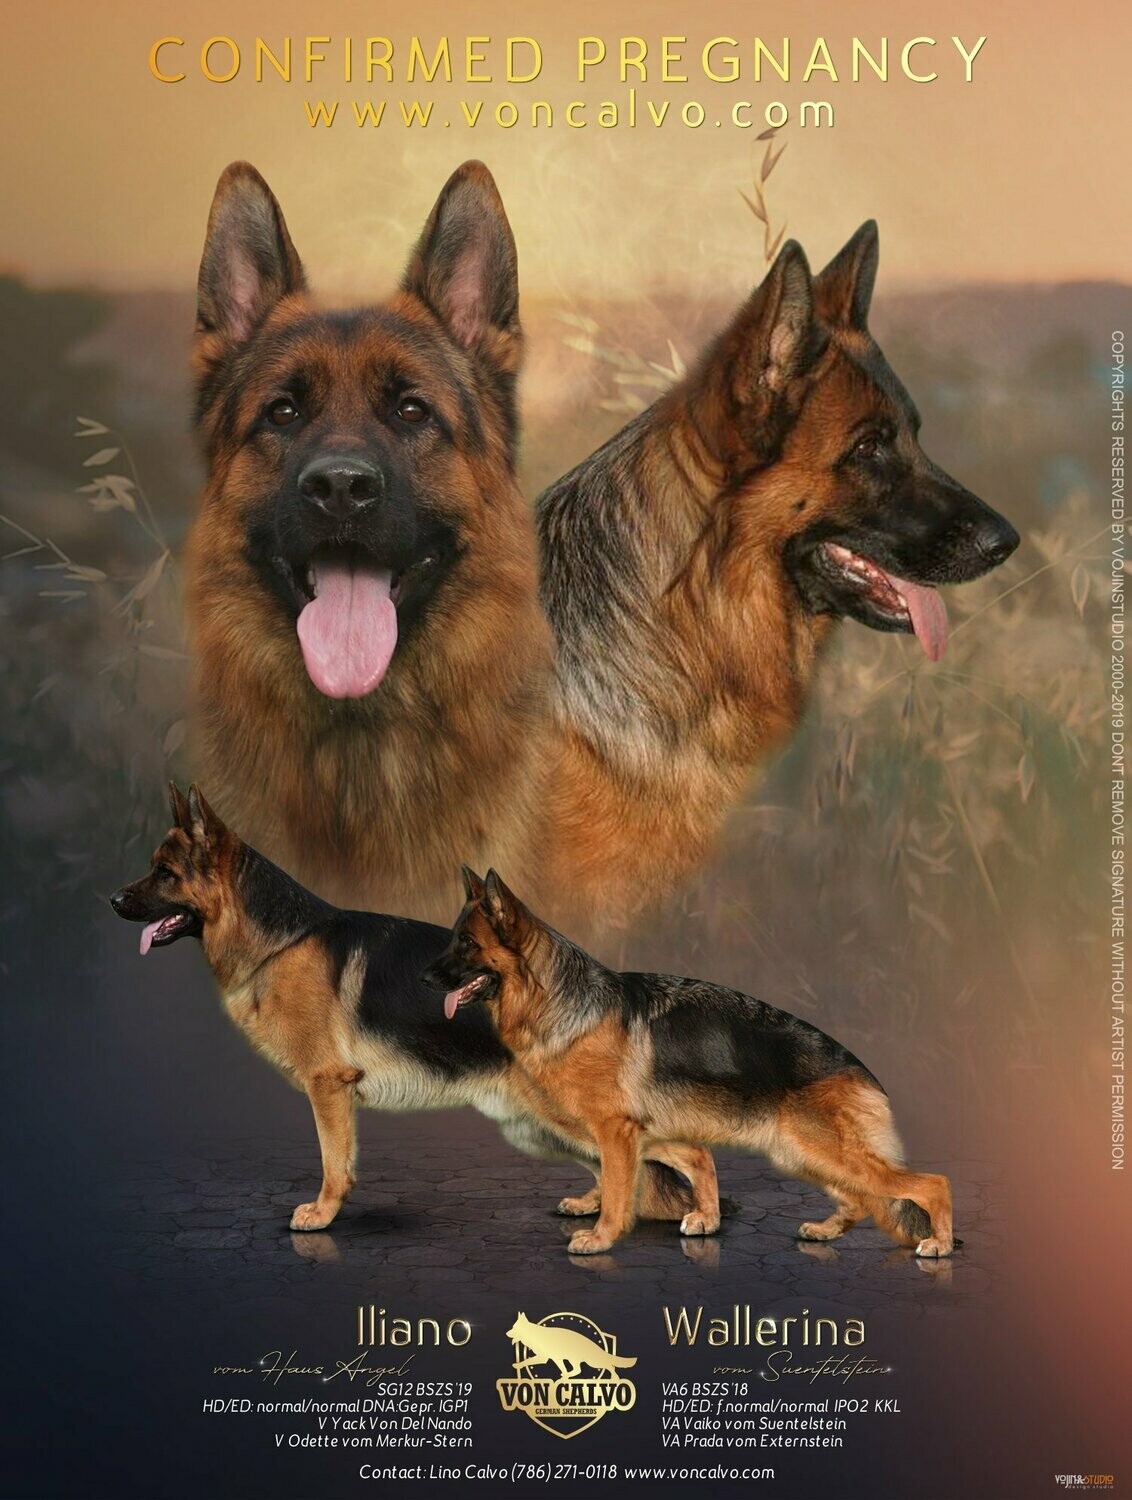 Iliano and Wallerina puppy